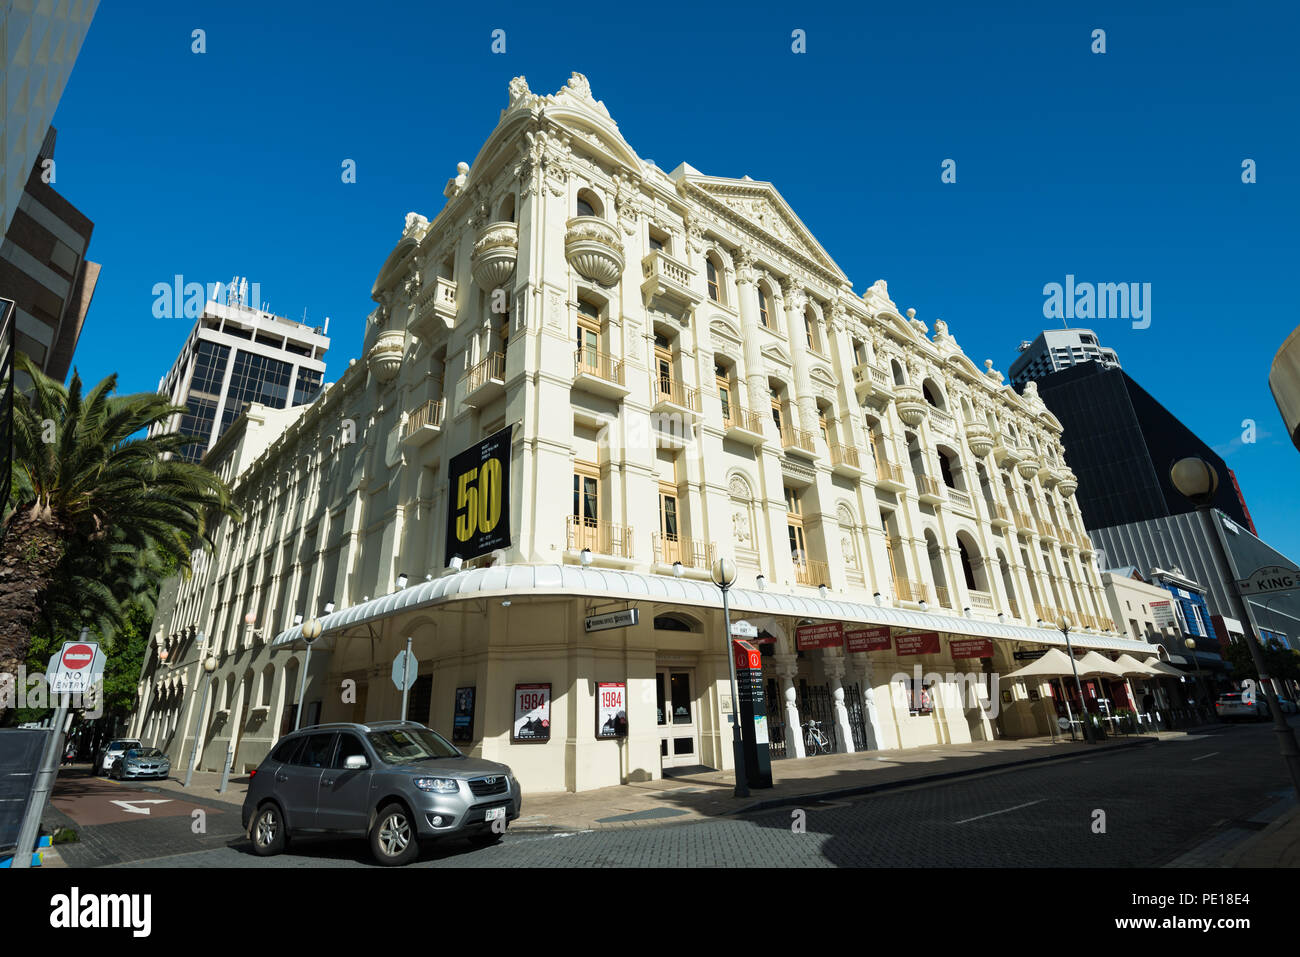 Teatro e negozi di King Street nel centro di Perth Western Australia, Oceania Foto Stock